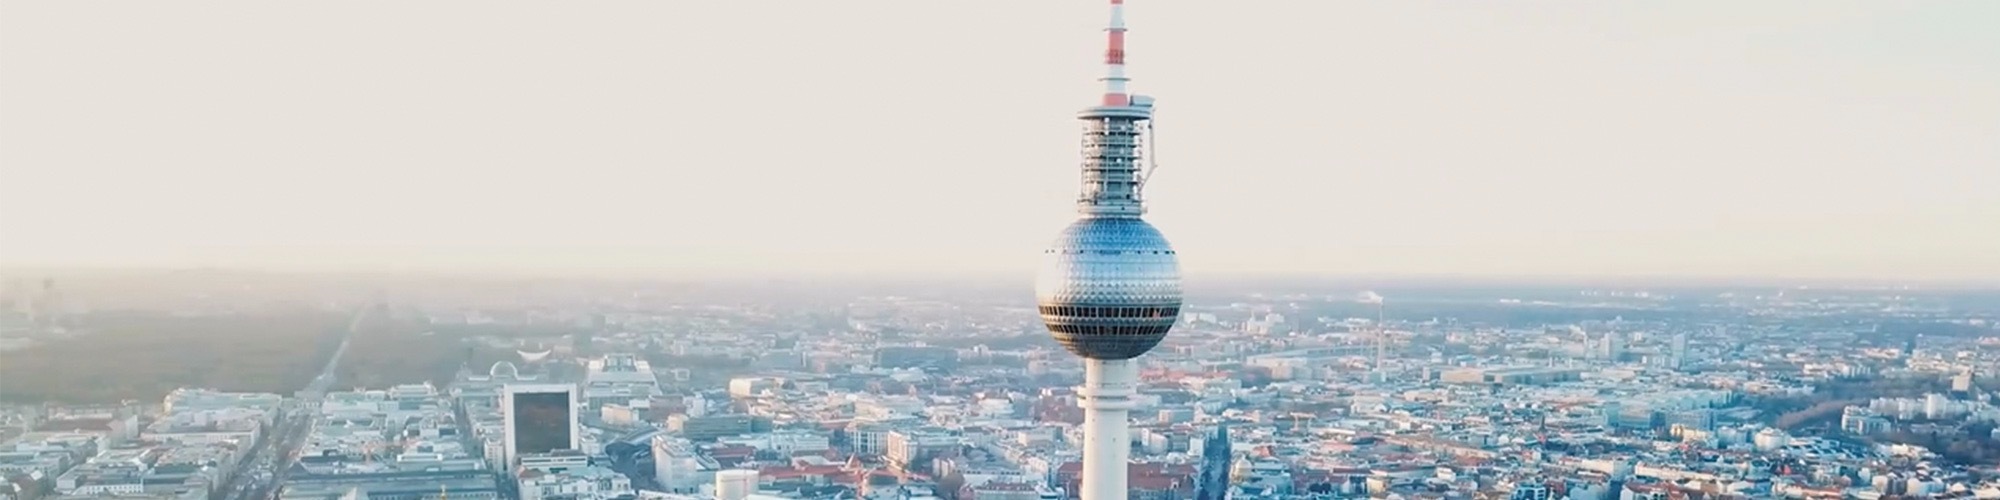 The Fernsehturm, Berlin